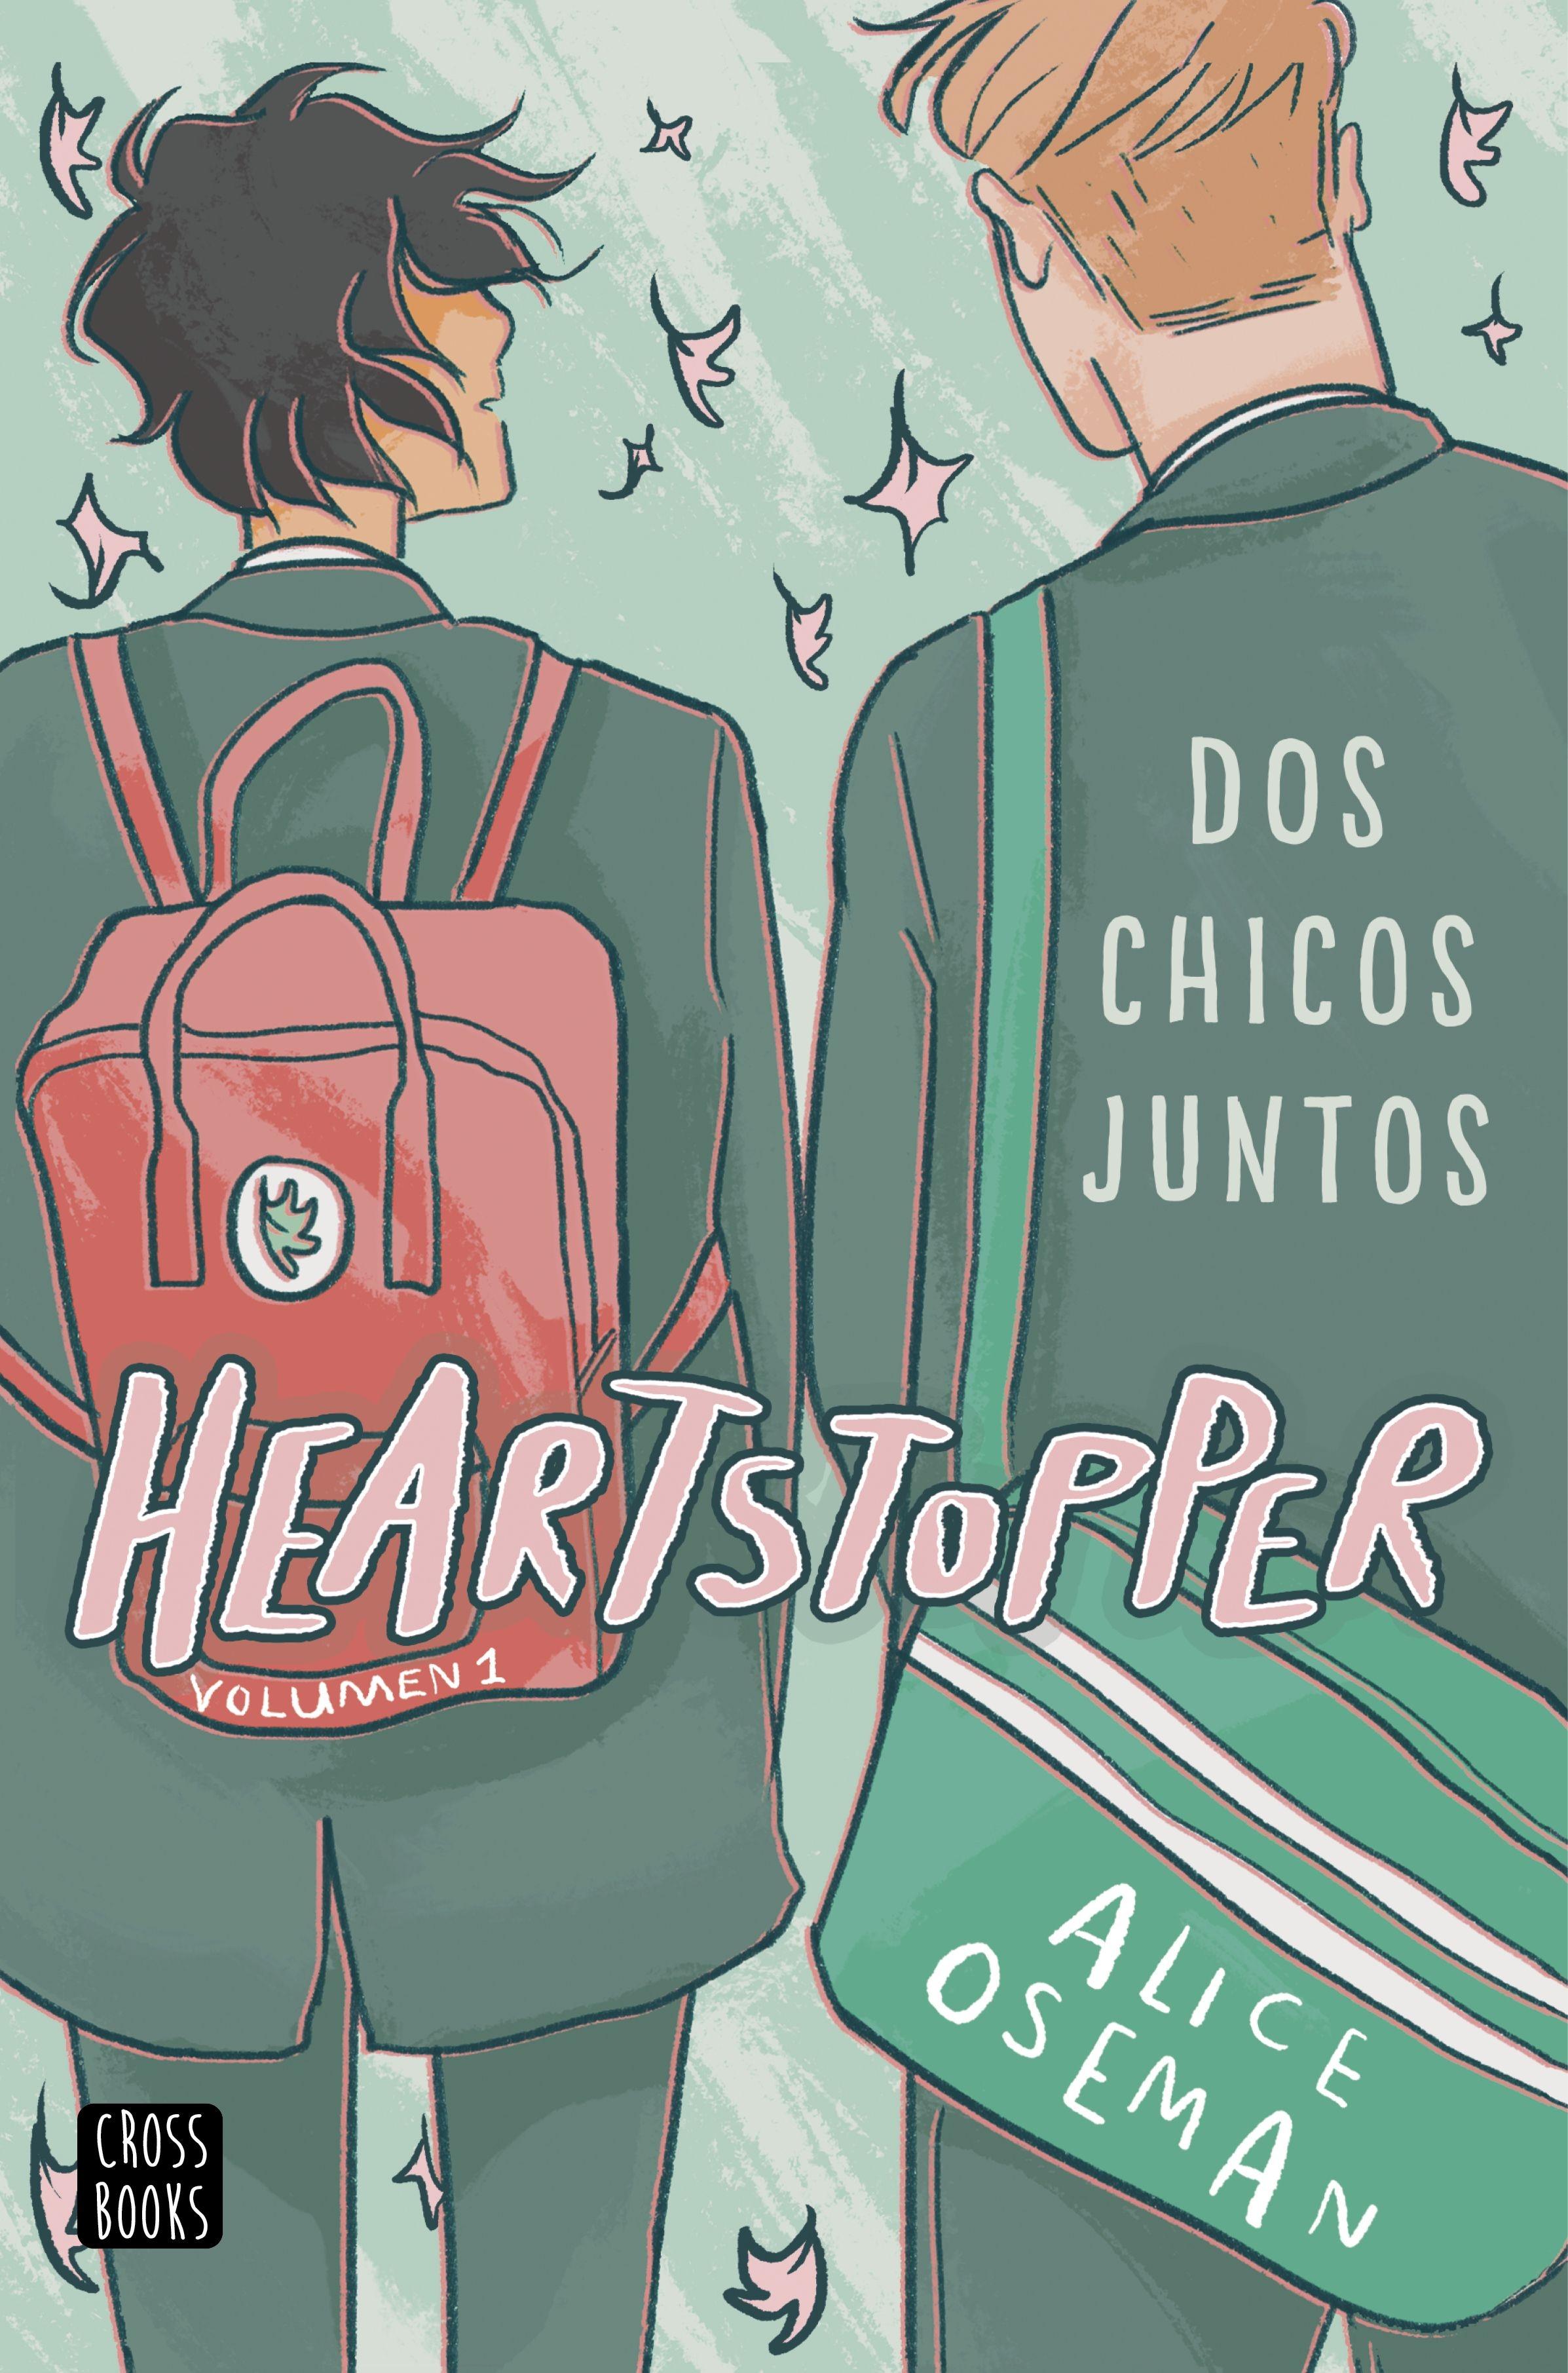 Heartstopper 1.  "Dos Chicos Juntos"